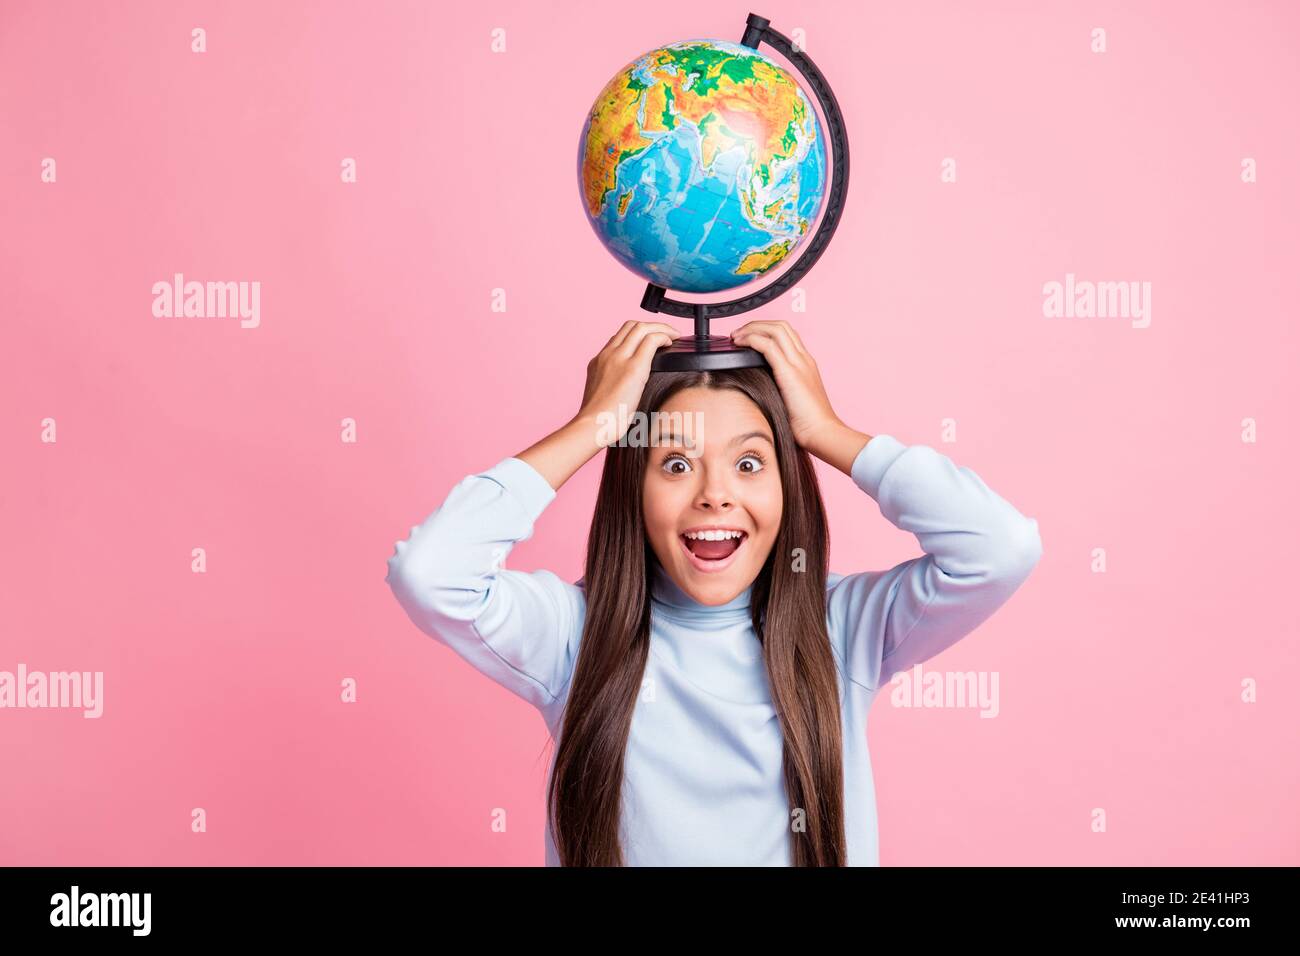 Retrato de una chica muy alegre y divertida llevando globo cabeza con diversión aislada sobre fondo de color pastel rosa Foto de stock